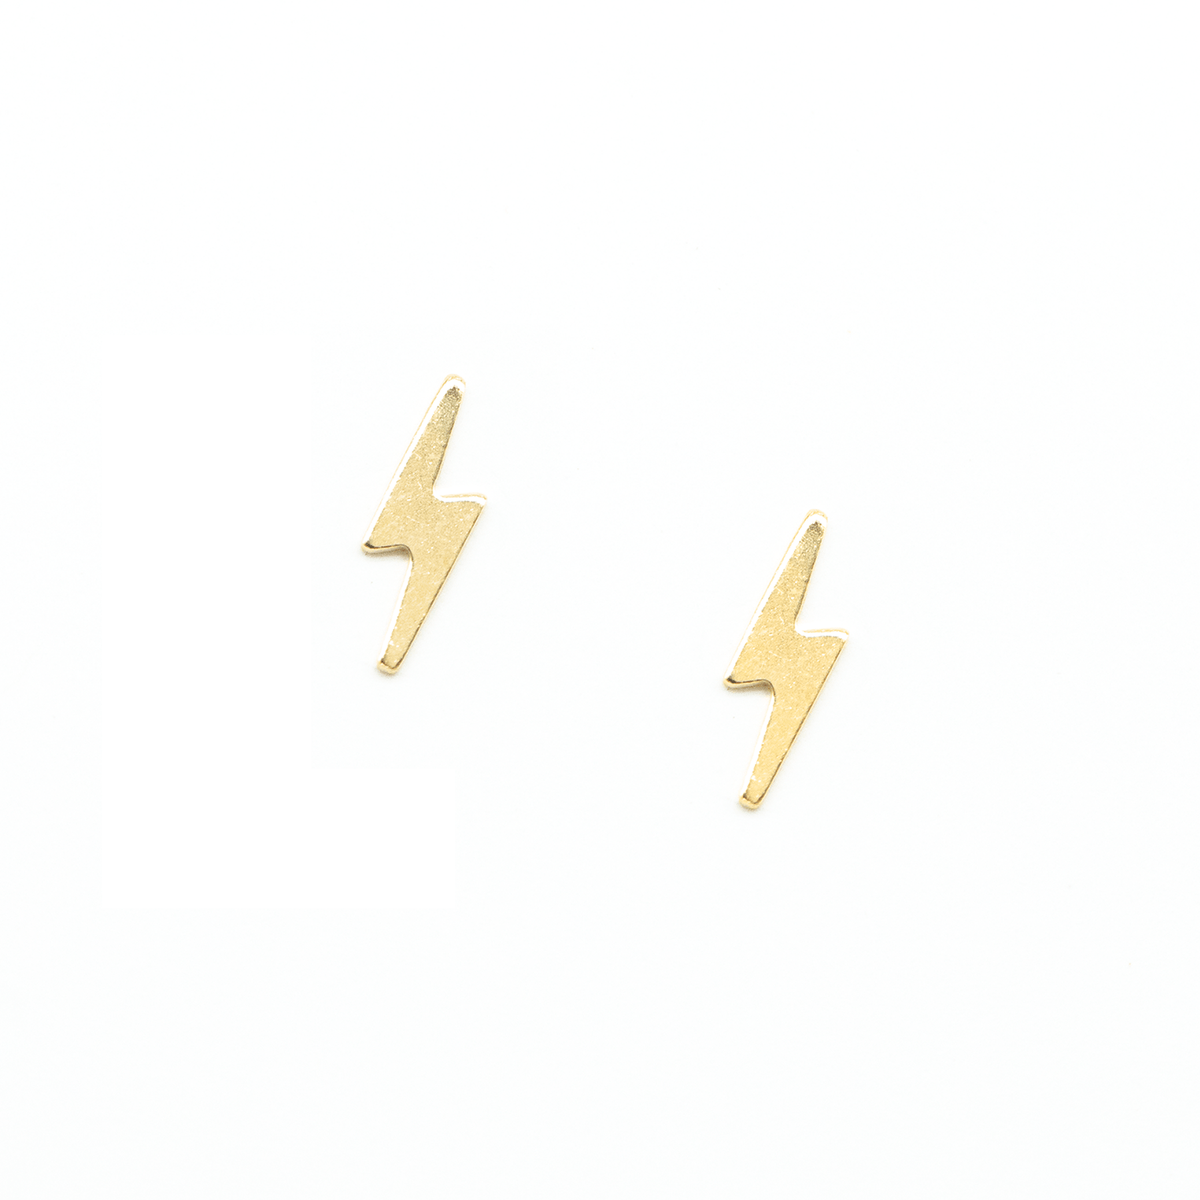 Lightning Bolt Earrings Dainty Studs 14k Gold Filled